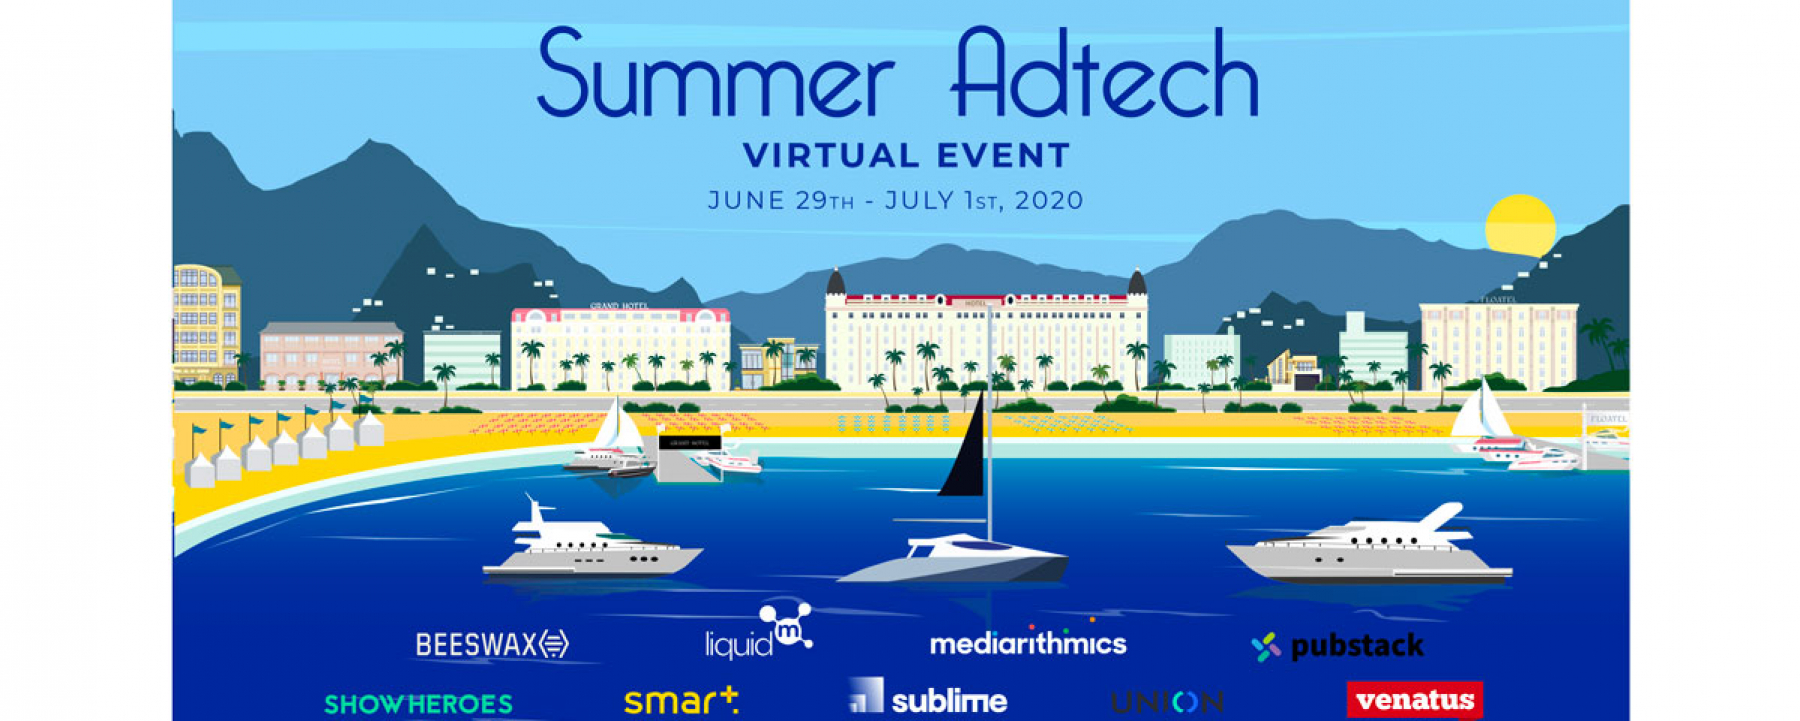 Summer adtech virtual event